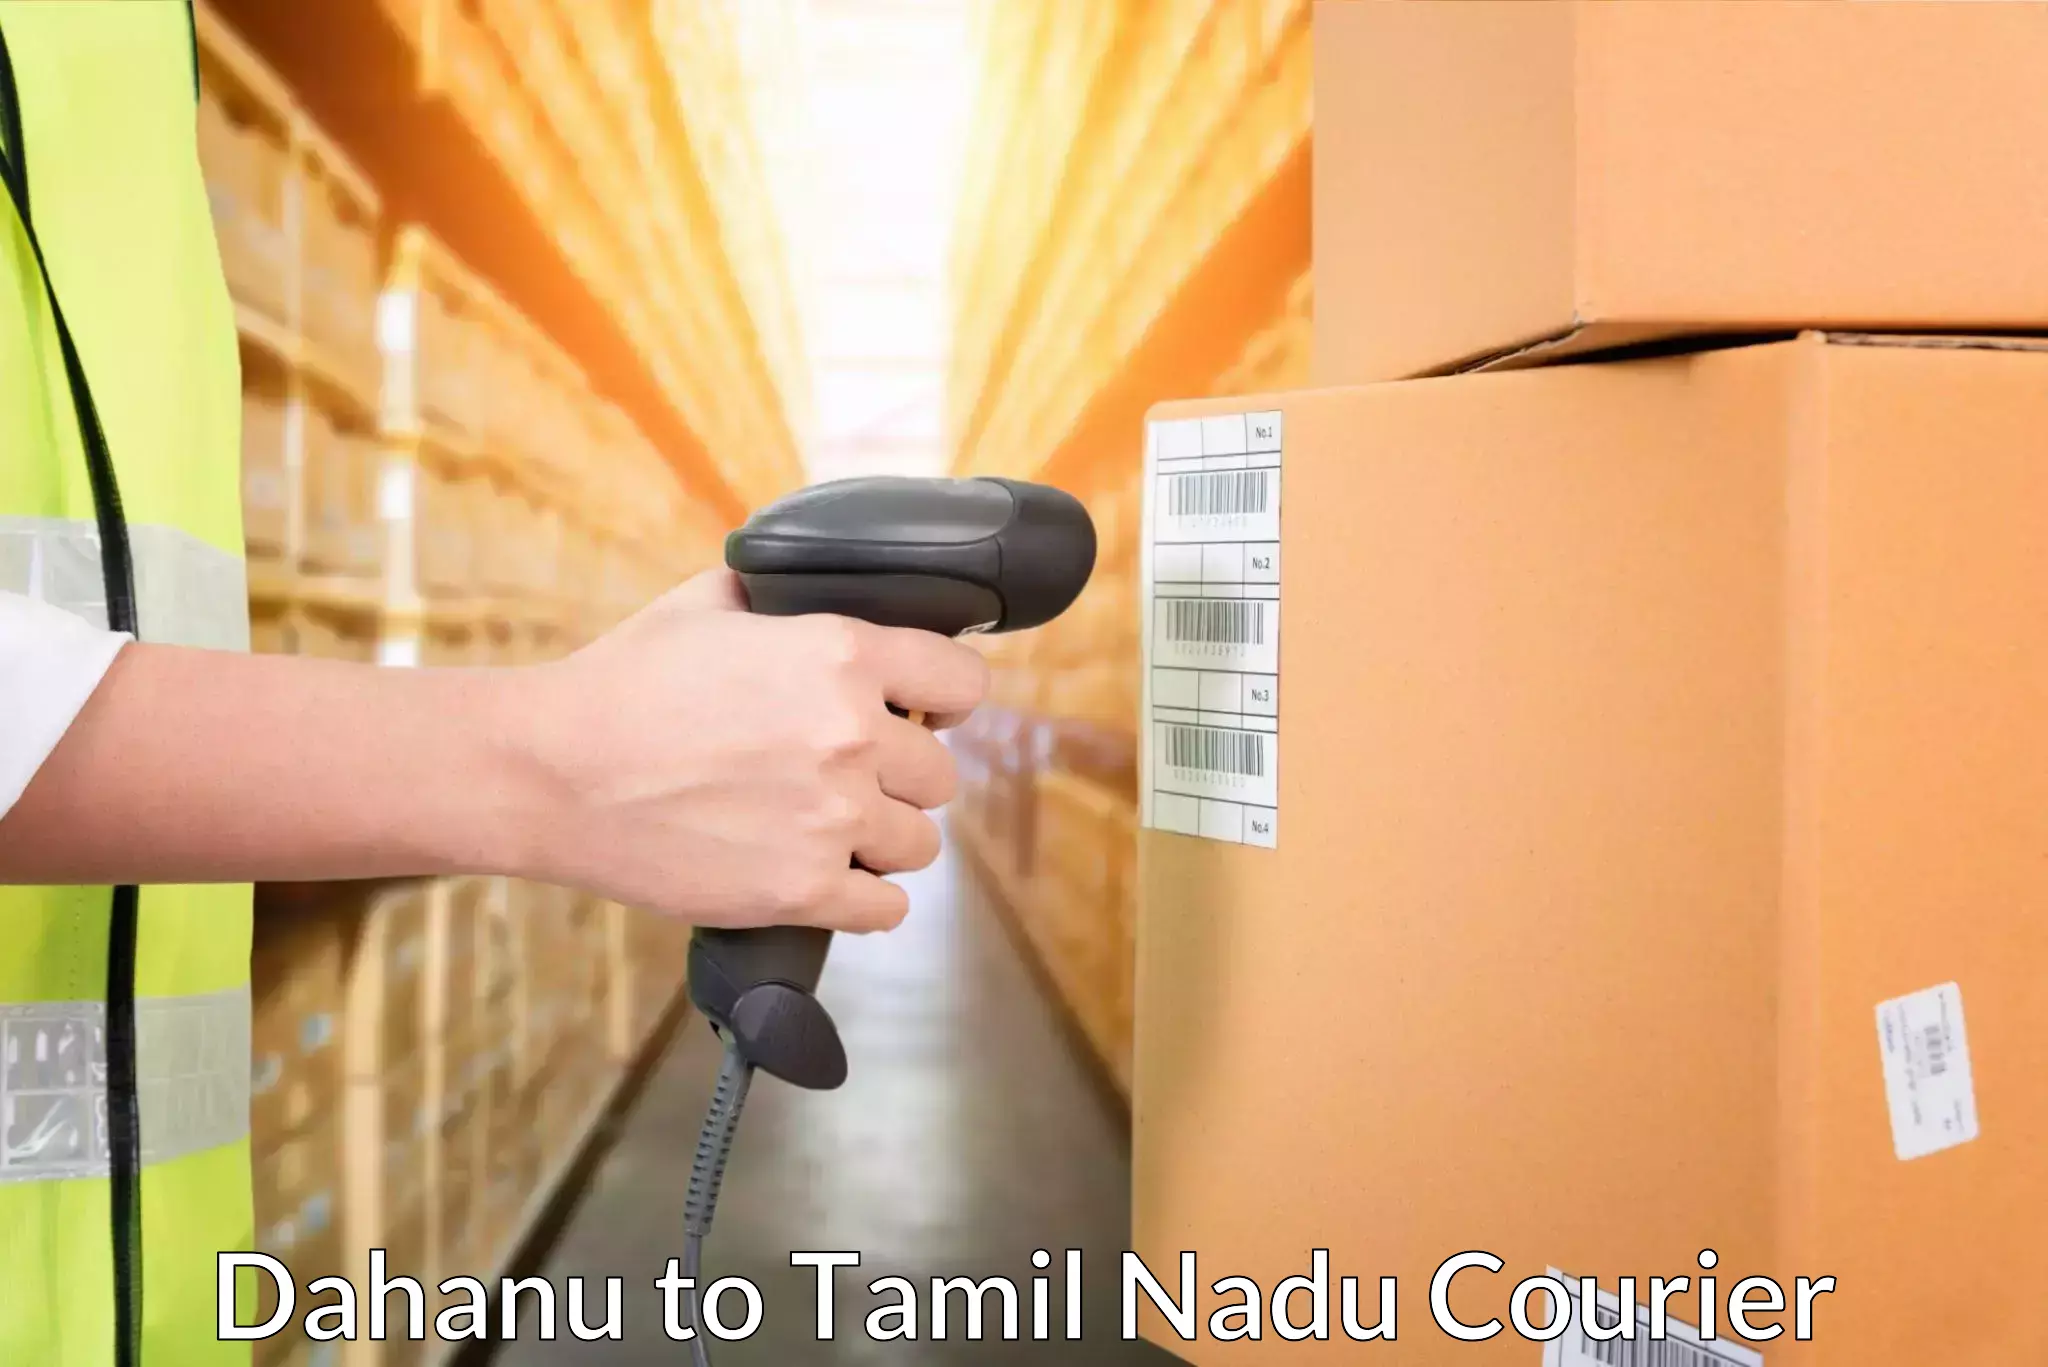 Customer-focused courier Dahanu to Kumbakonam